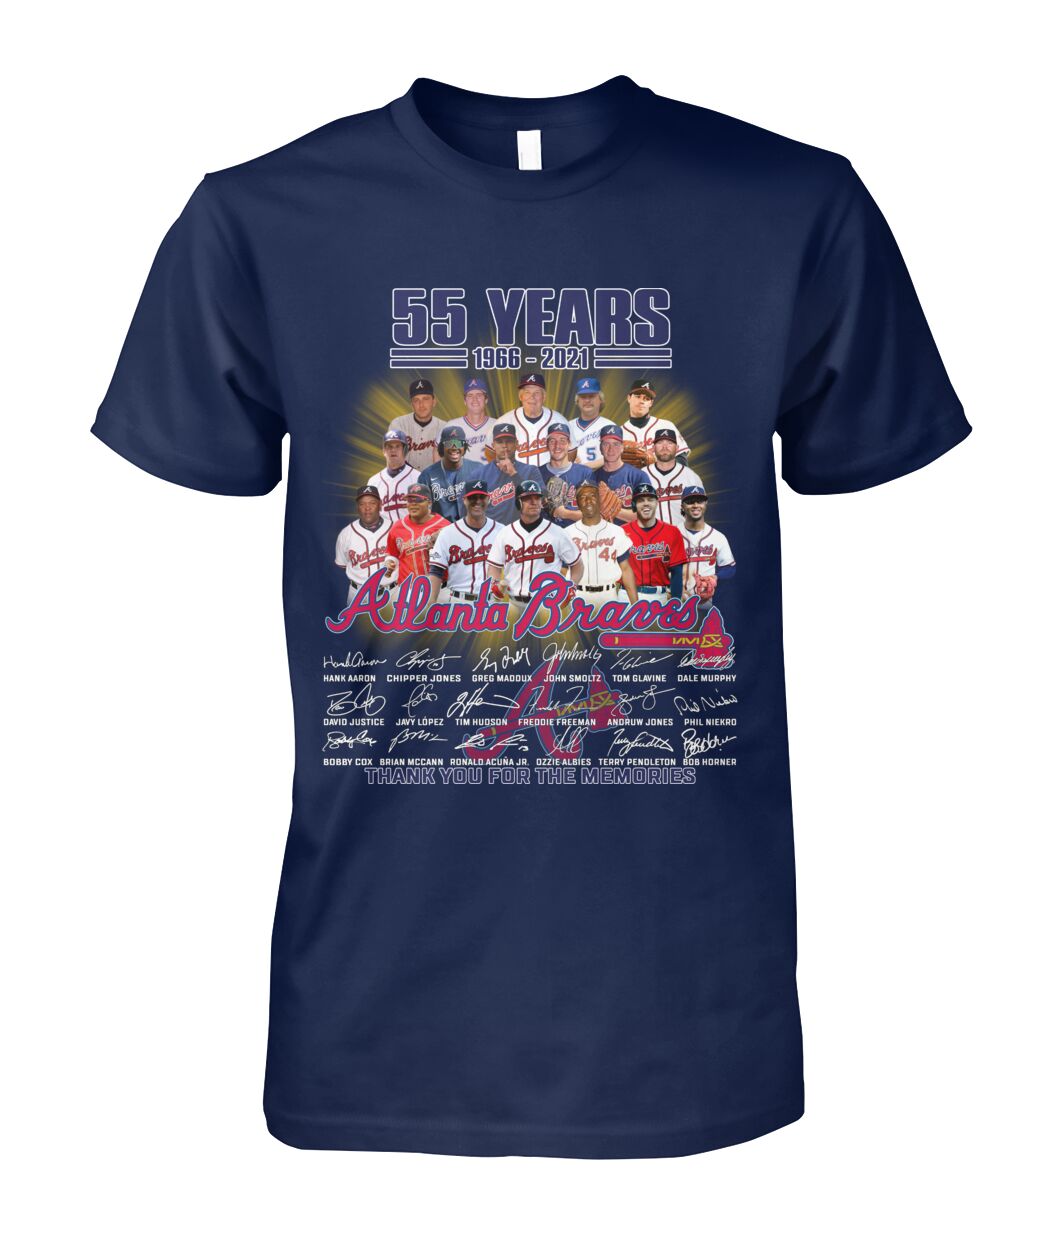 55 years 1966 2021 Atlanta Braves shirt, tank top and hoodie